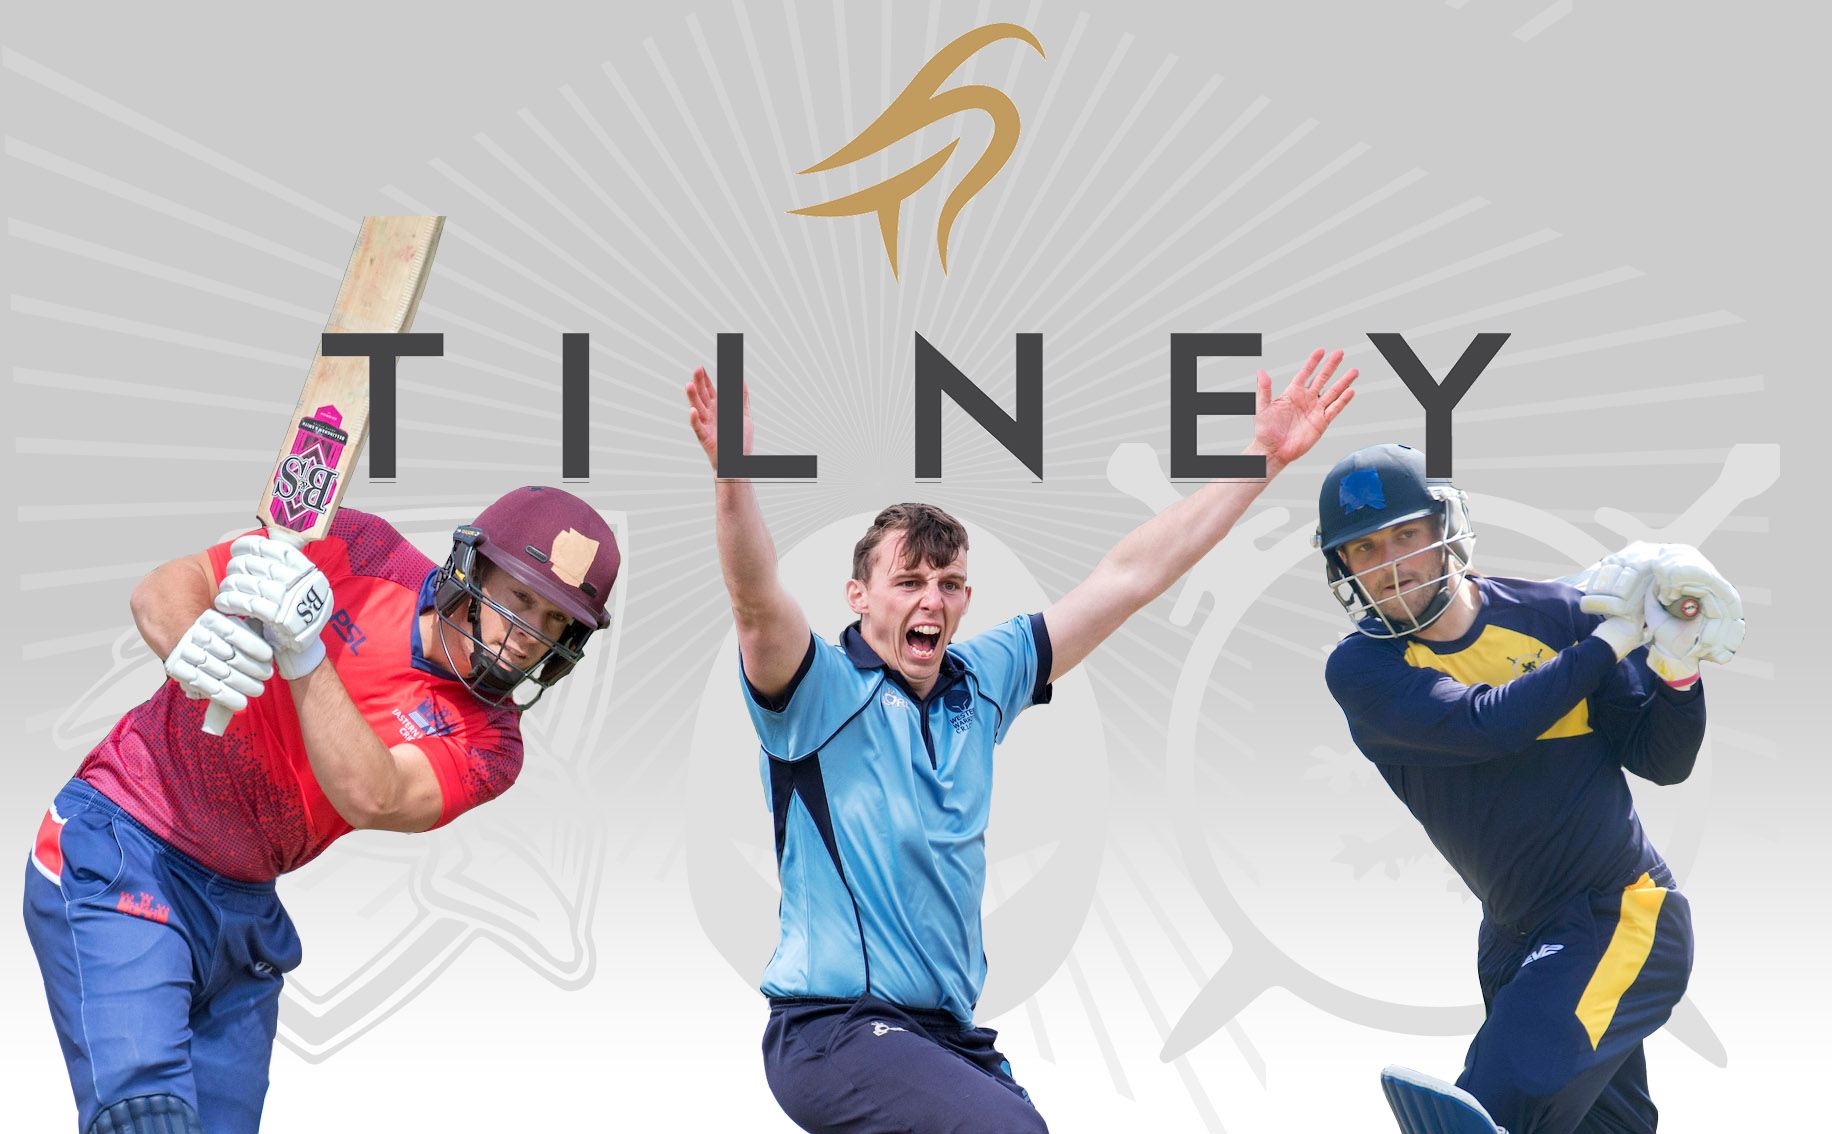 Tilney to Sponsor Men’s Regional Series